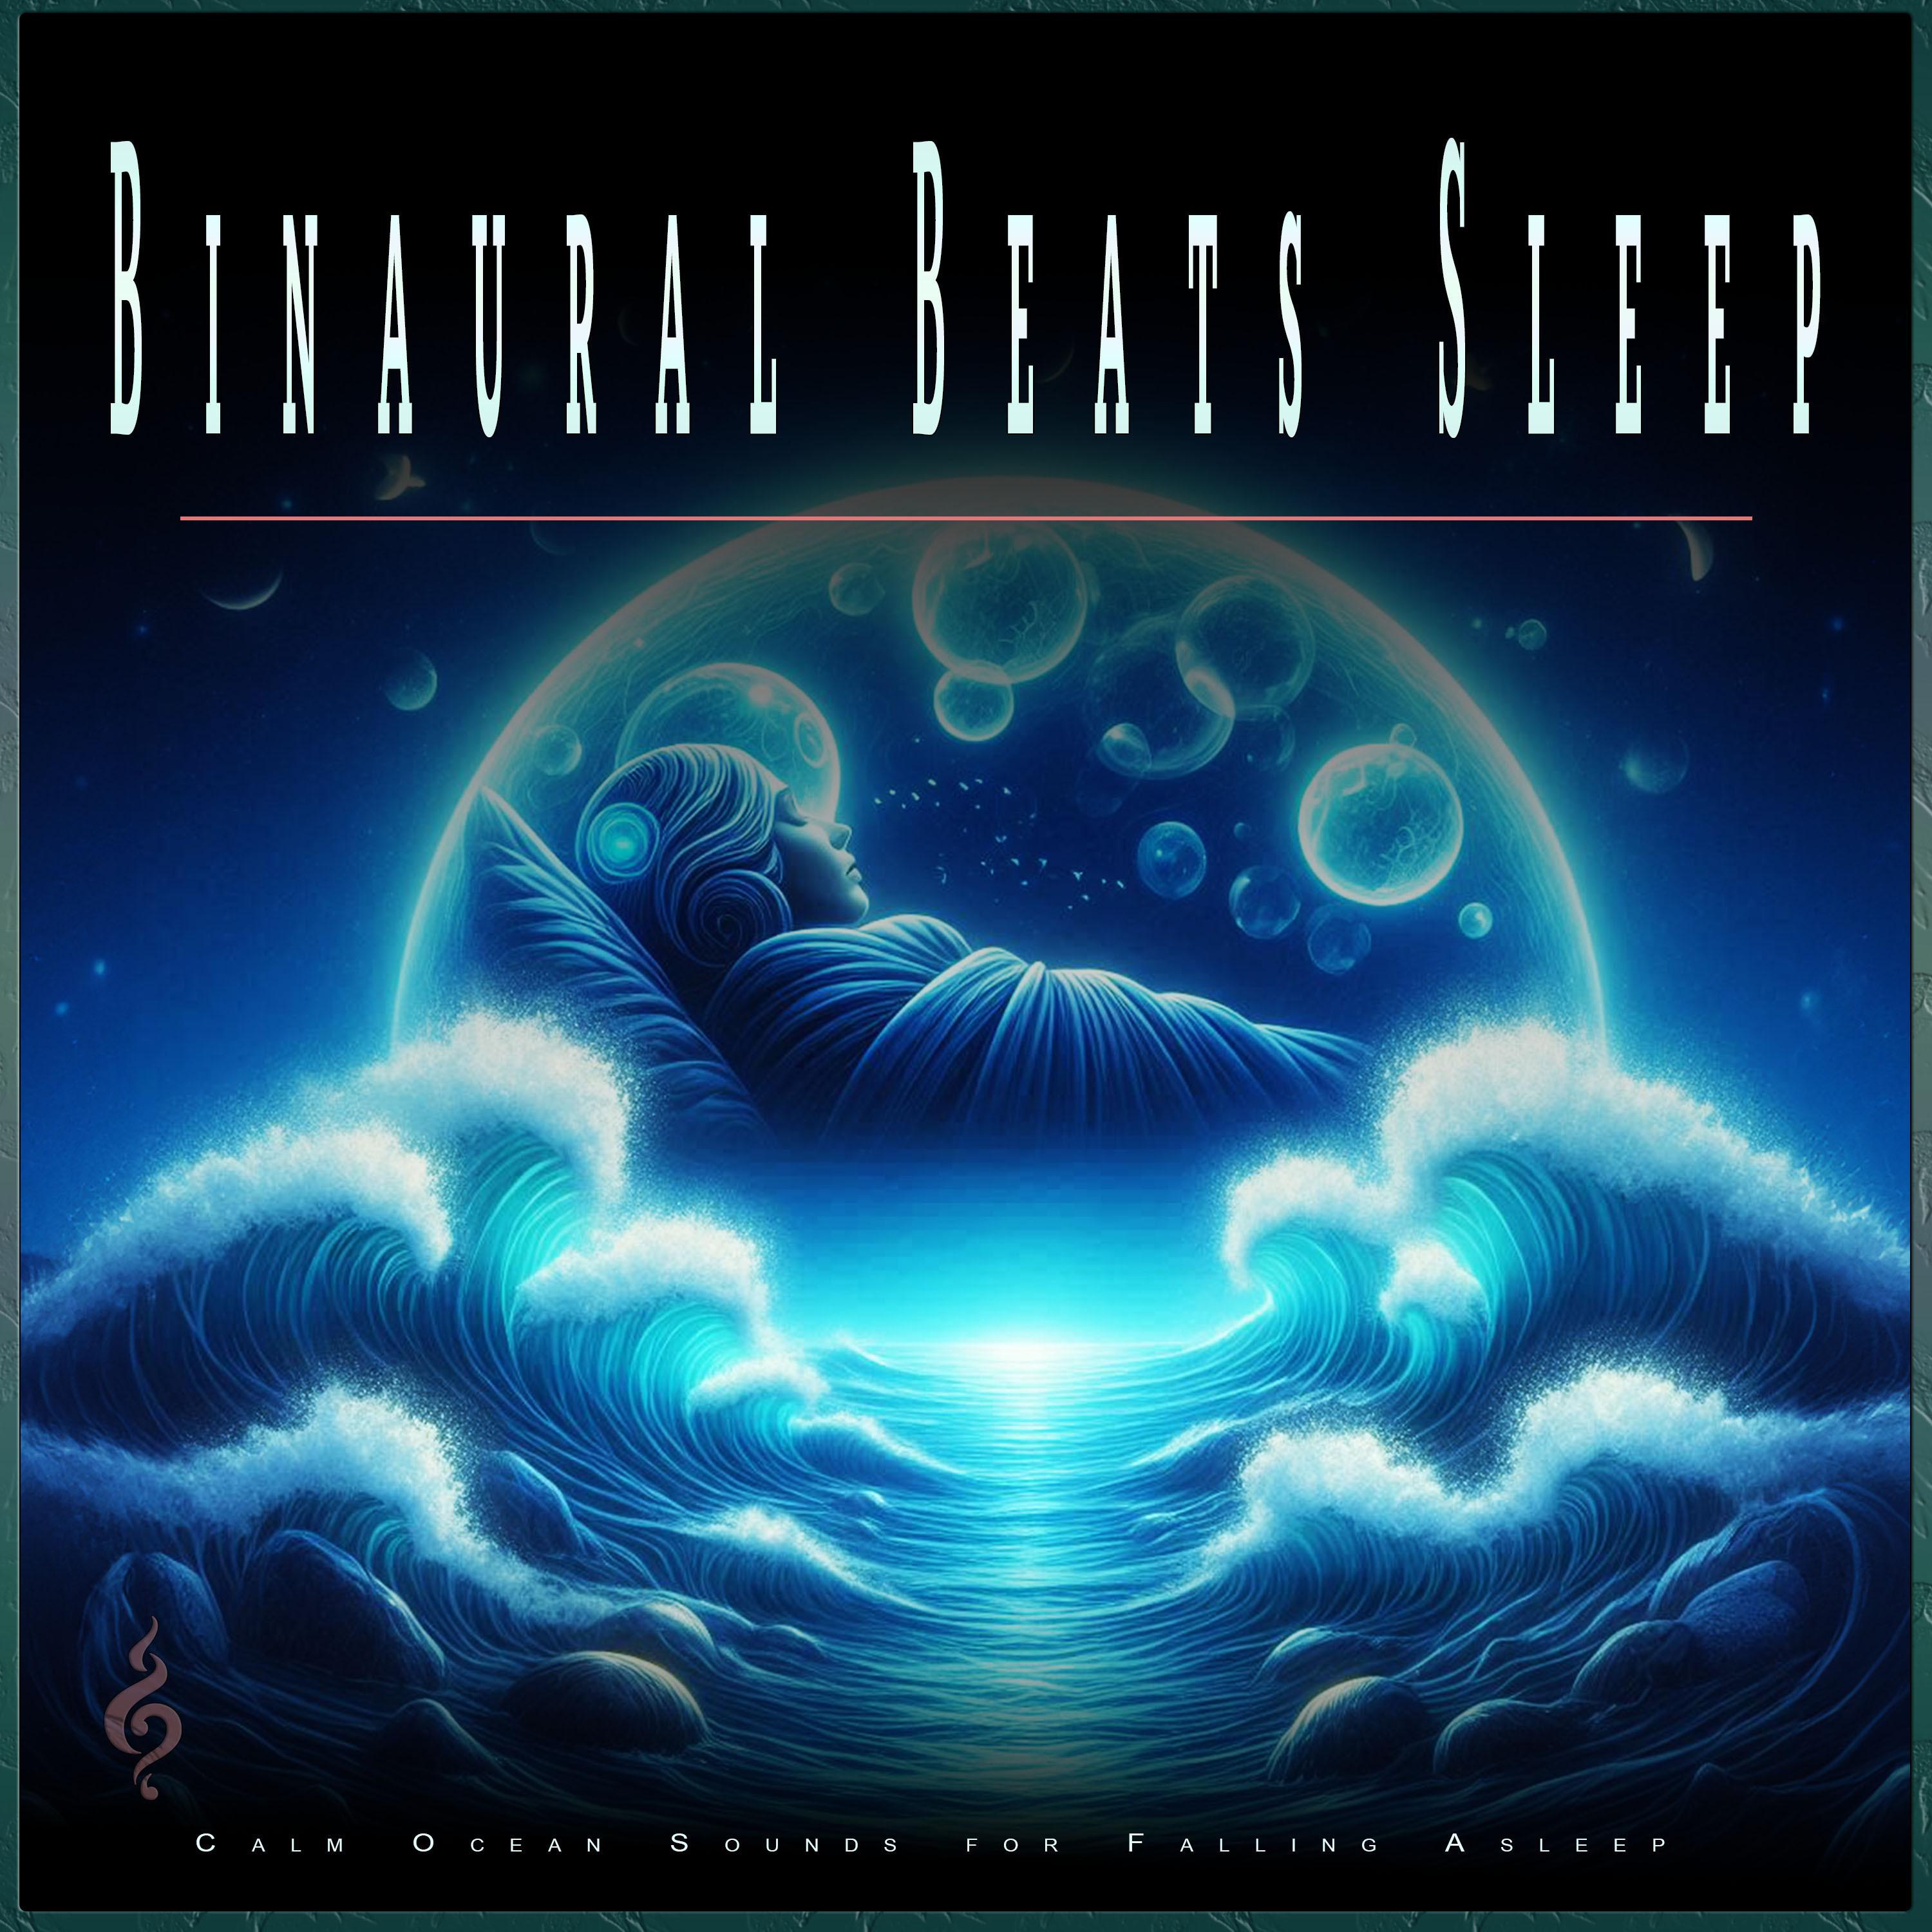 Ambient Sleeping Music - Alpha Waves for Deep Sleep